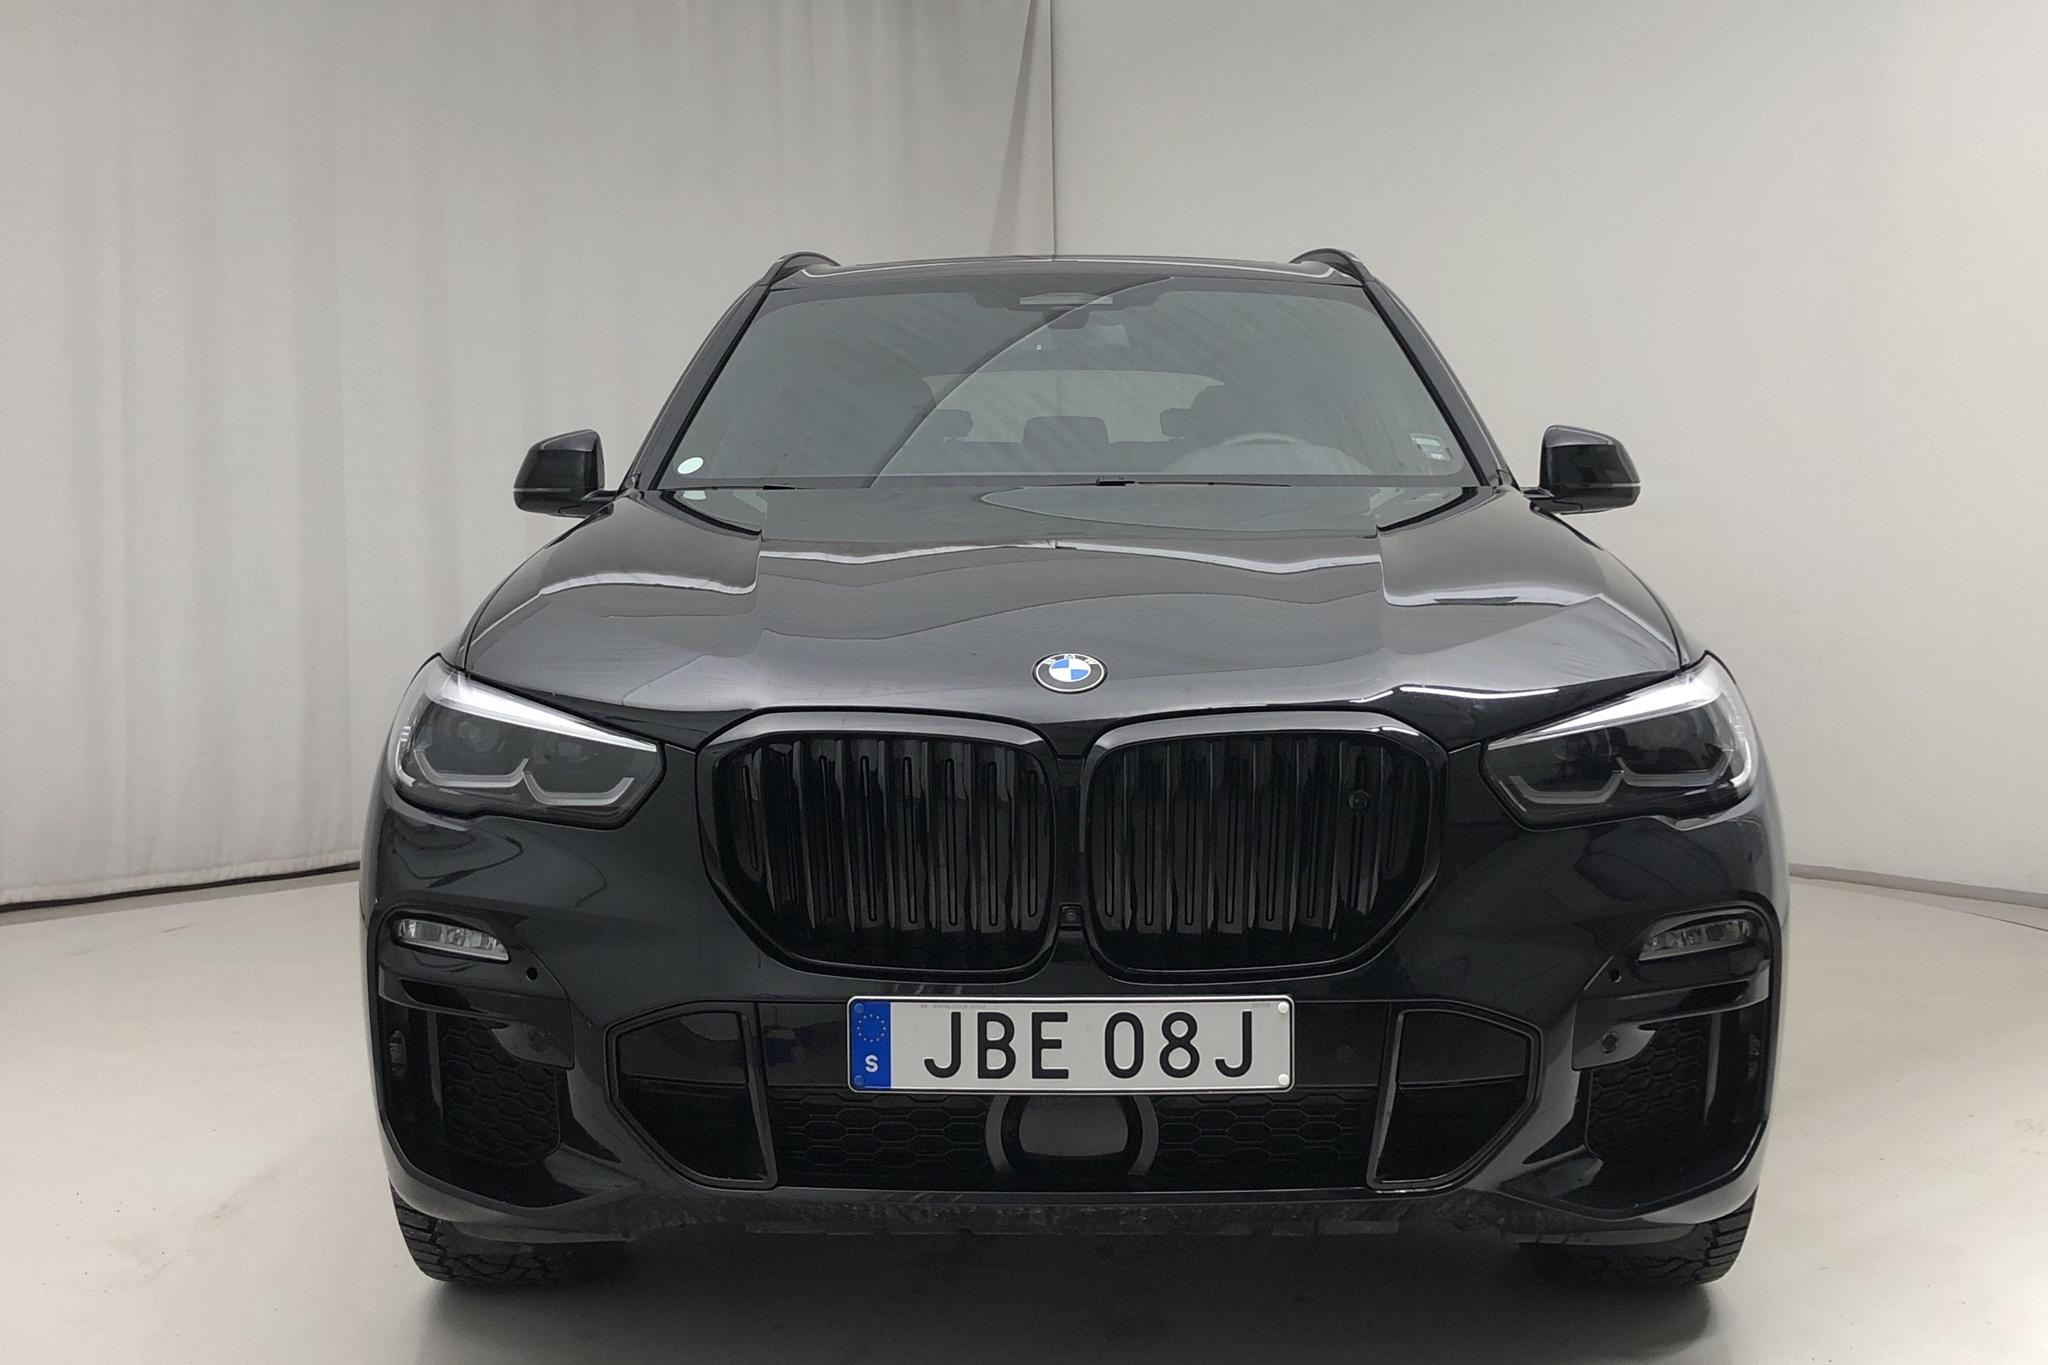 BMW X5 xDrive45e, G05 (394hk) - 37 540 km - Automatic - black - 2020